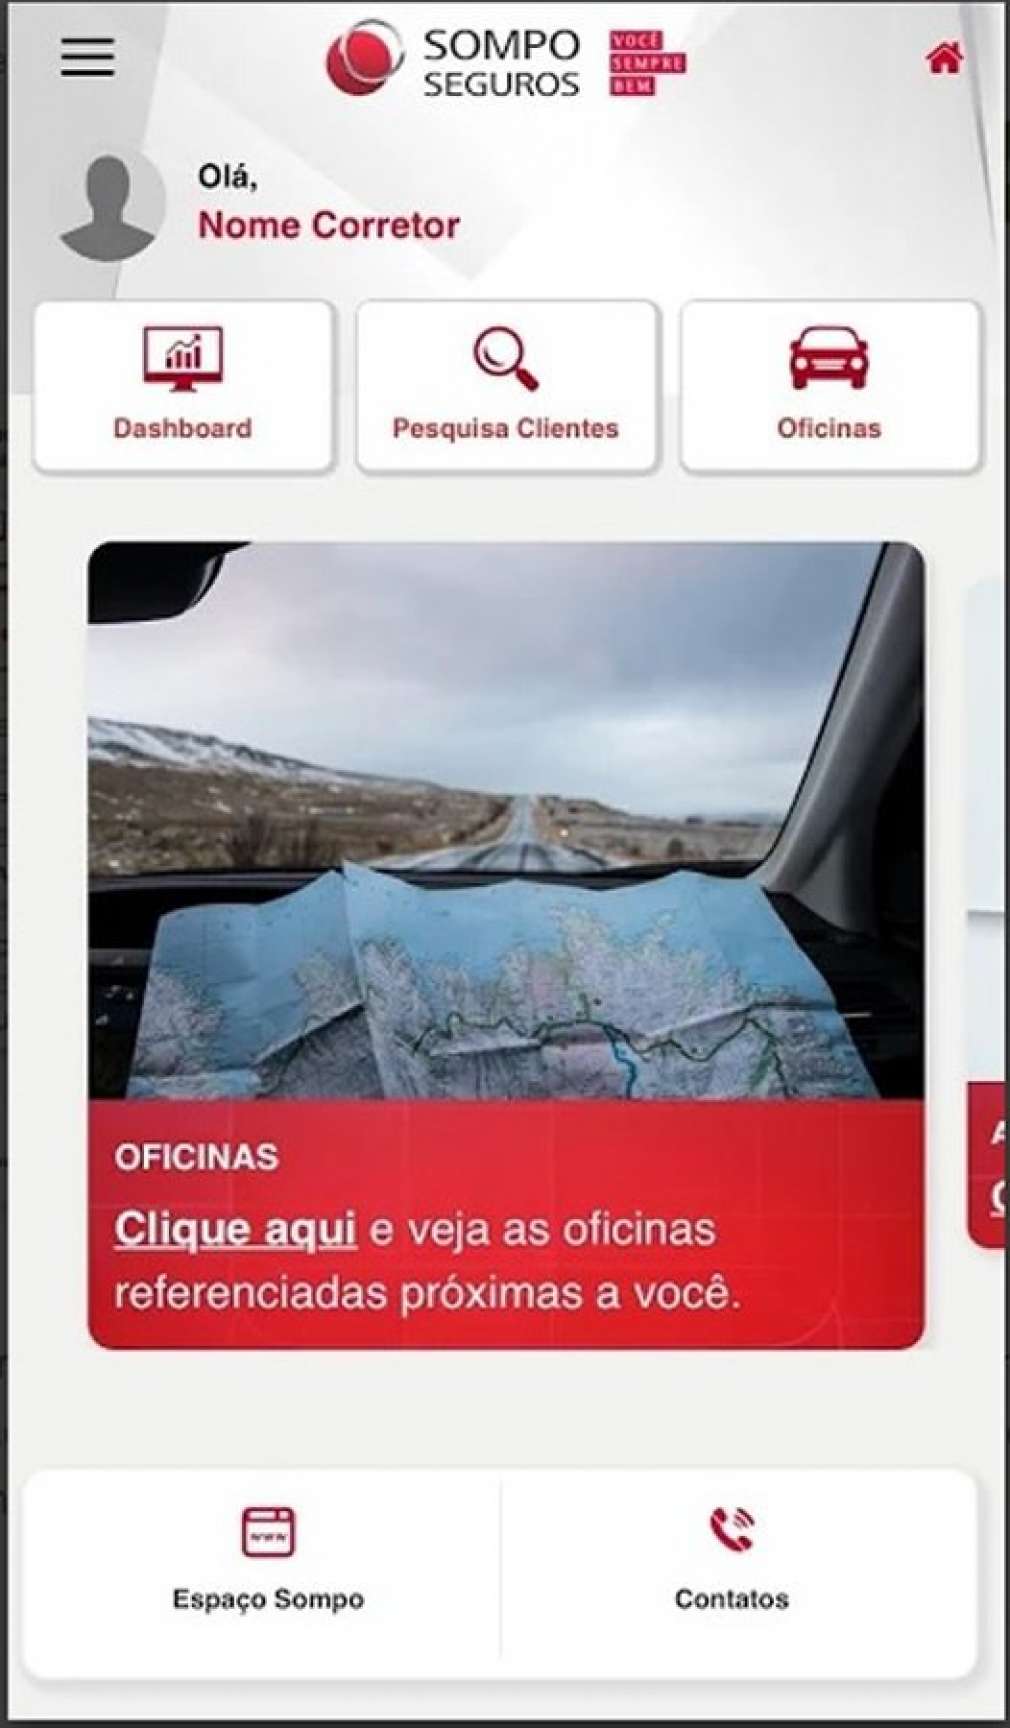 SOMPO SEGUROS lança Apps que integram seguros na palma da mão e facilitam solicitação rápida de serviços